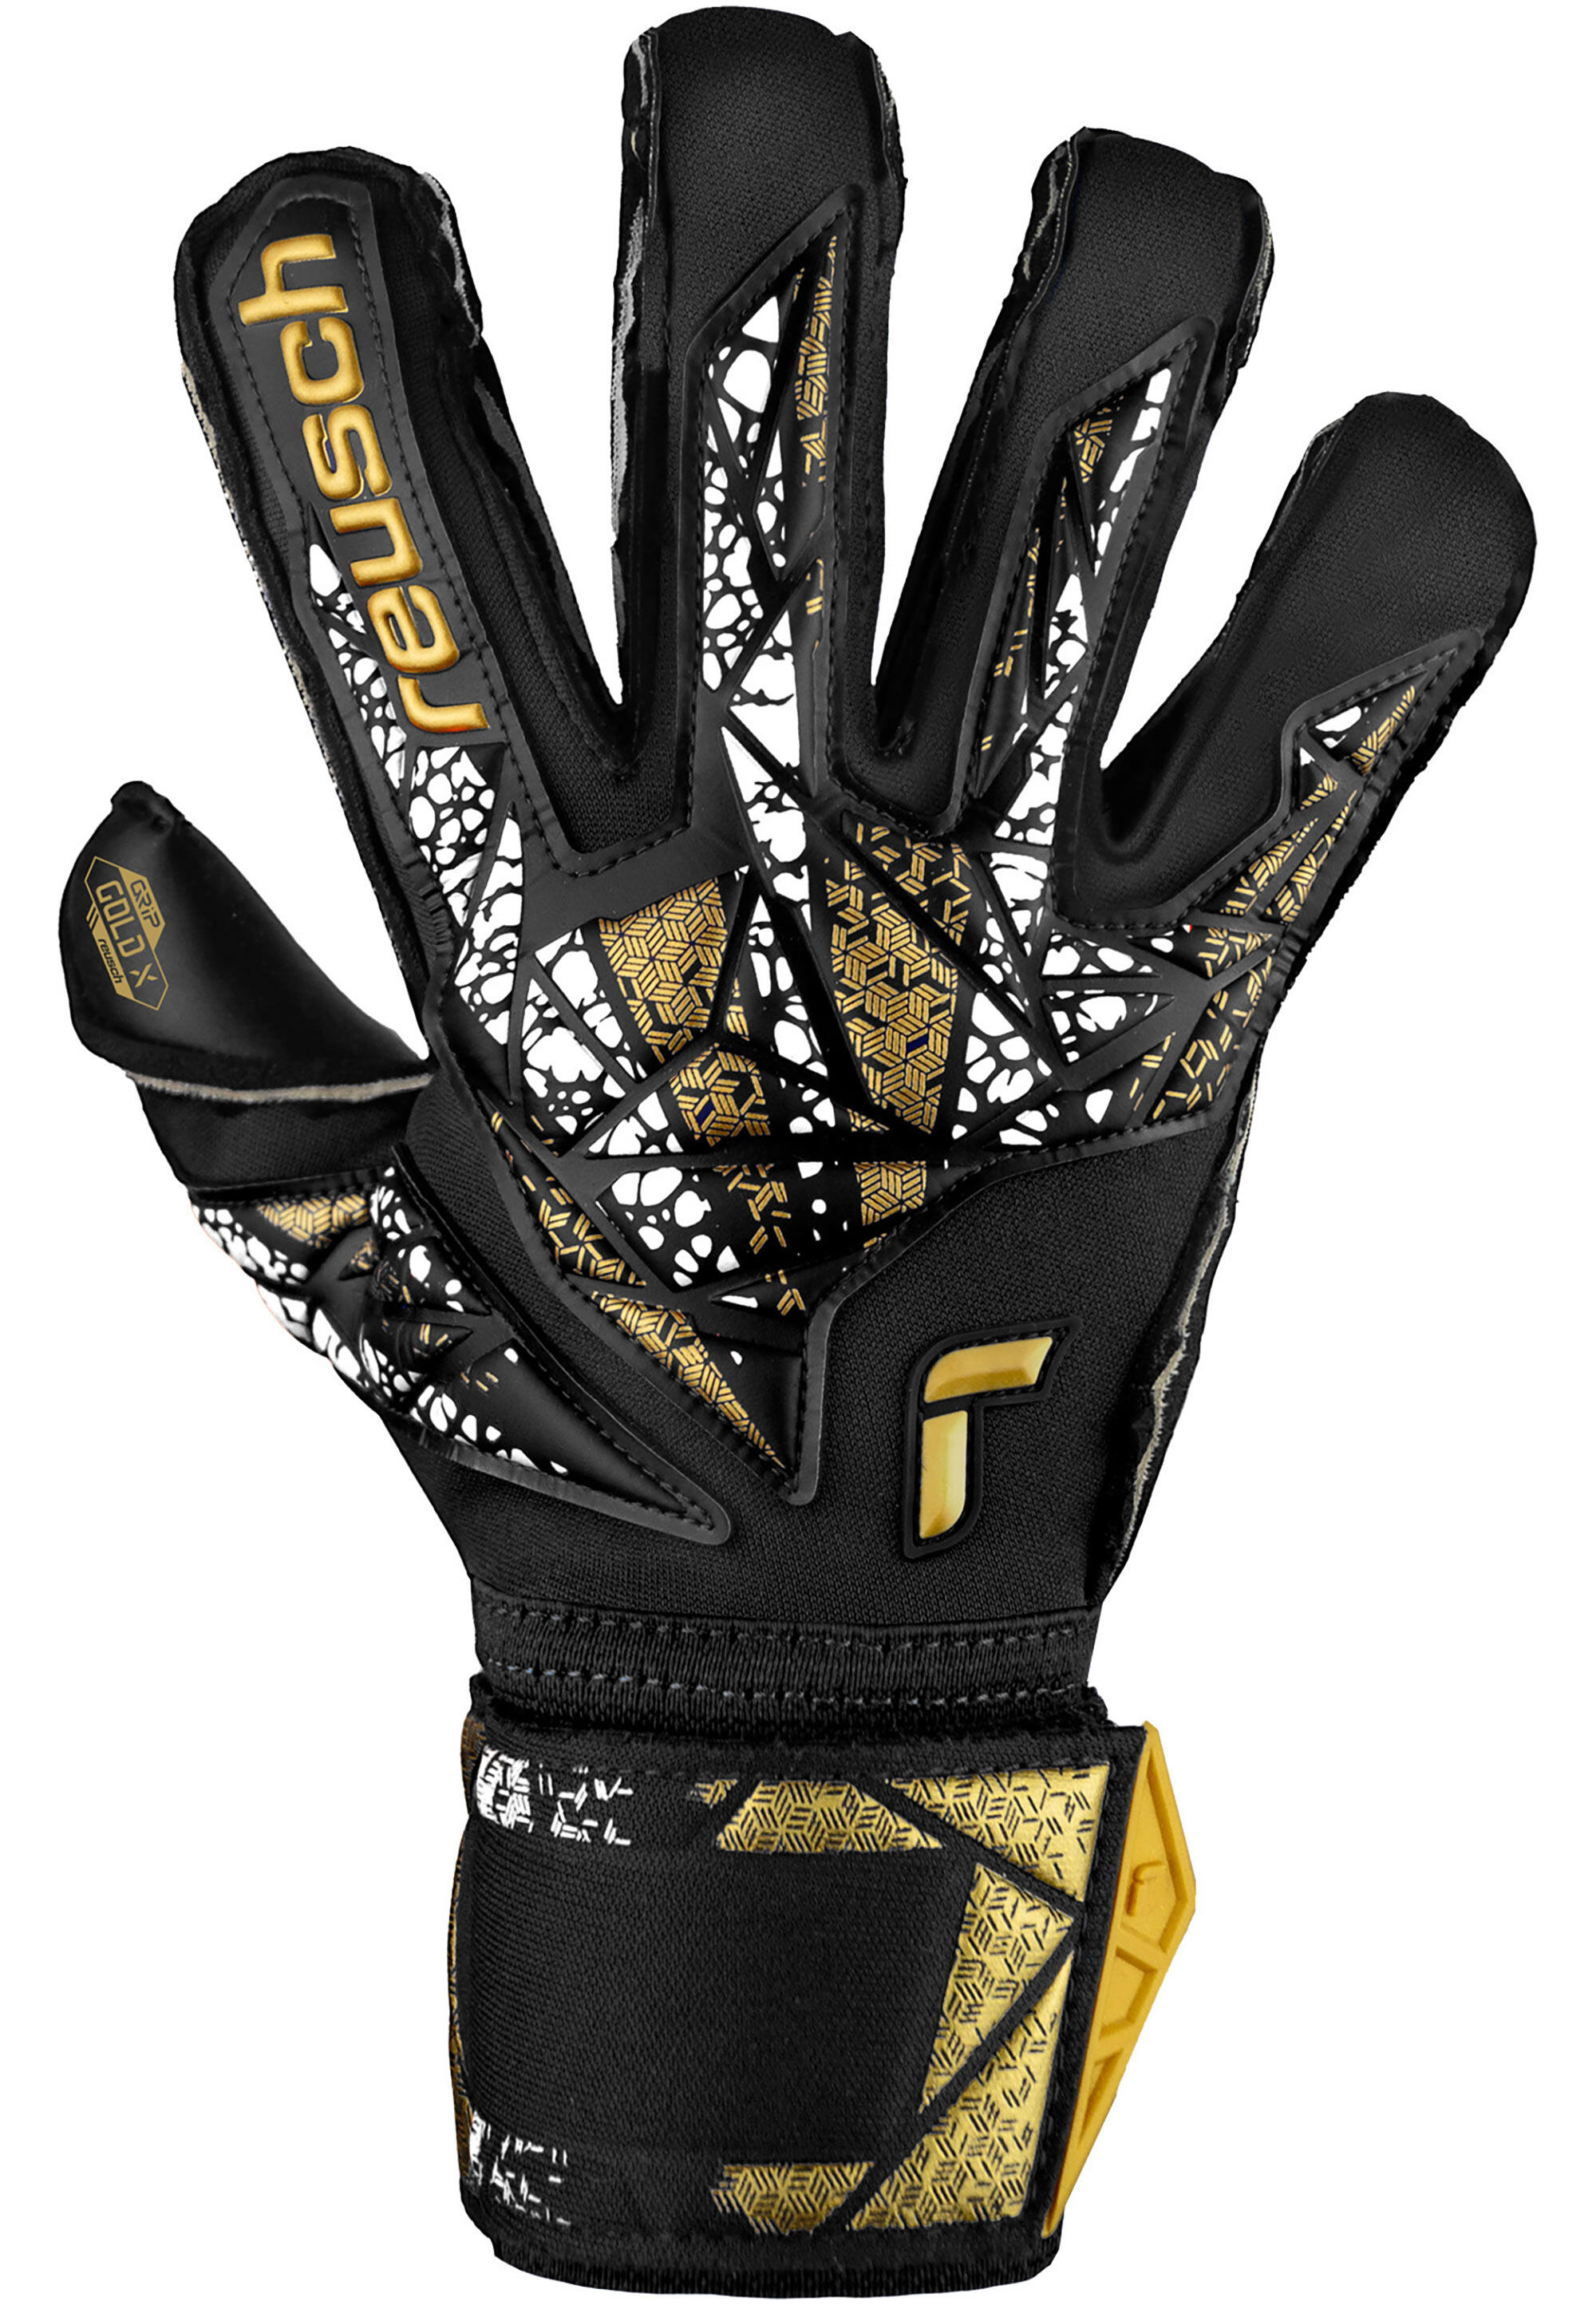 Reusch Attrakt Gold X Evolution Cut Finger Support Goalkeeper Gloves 2/7